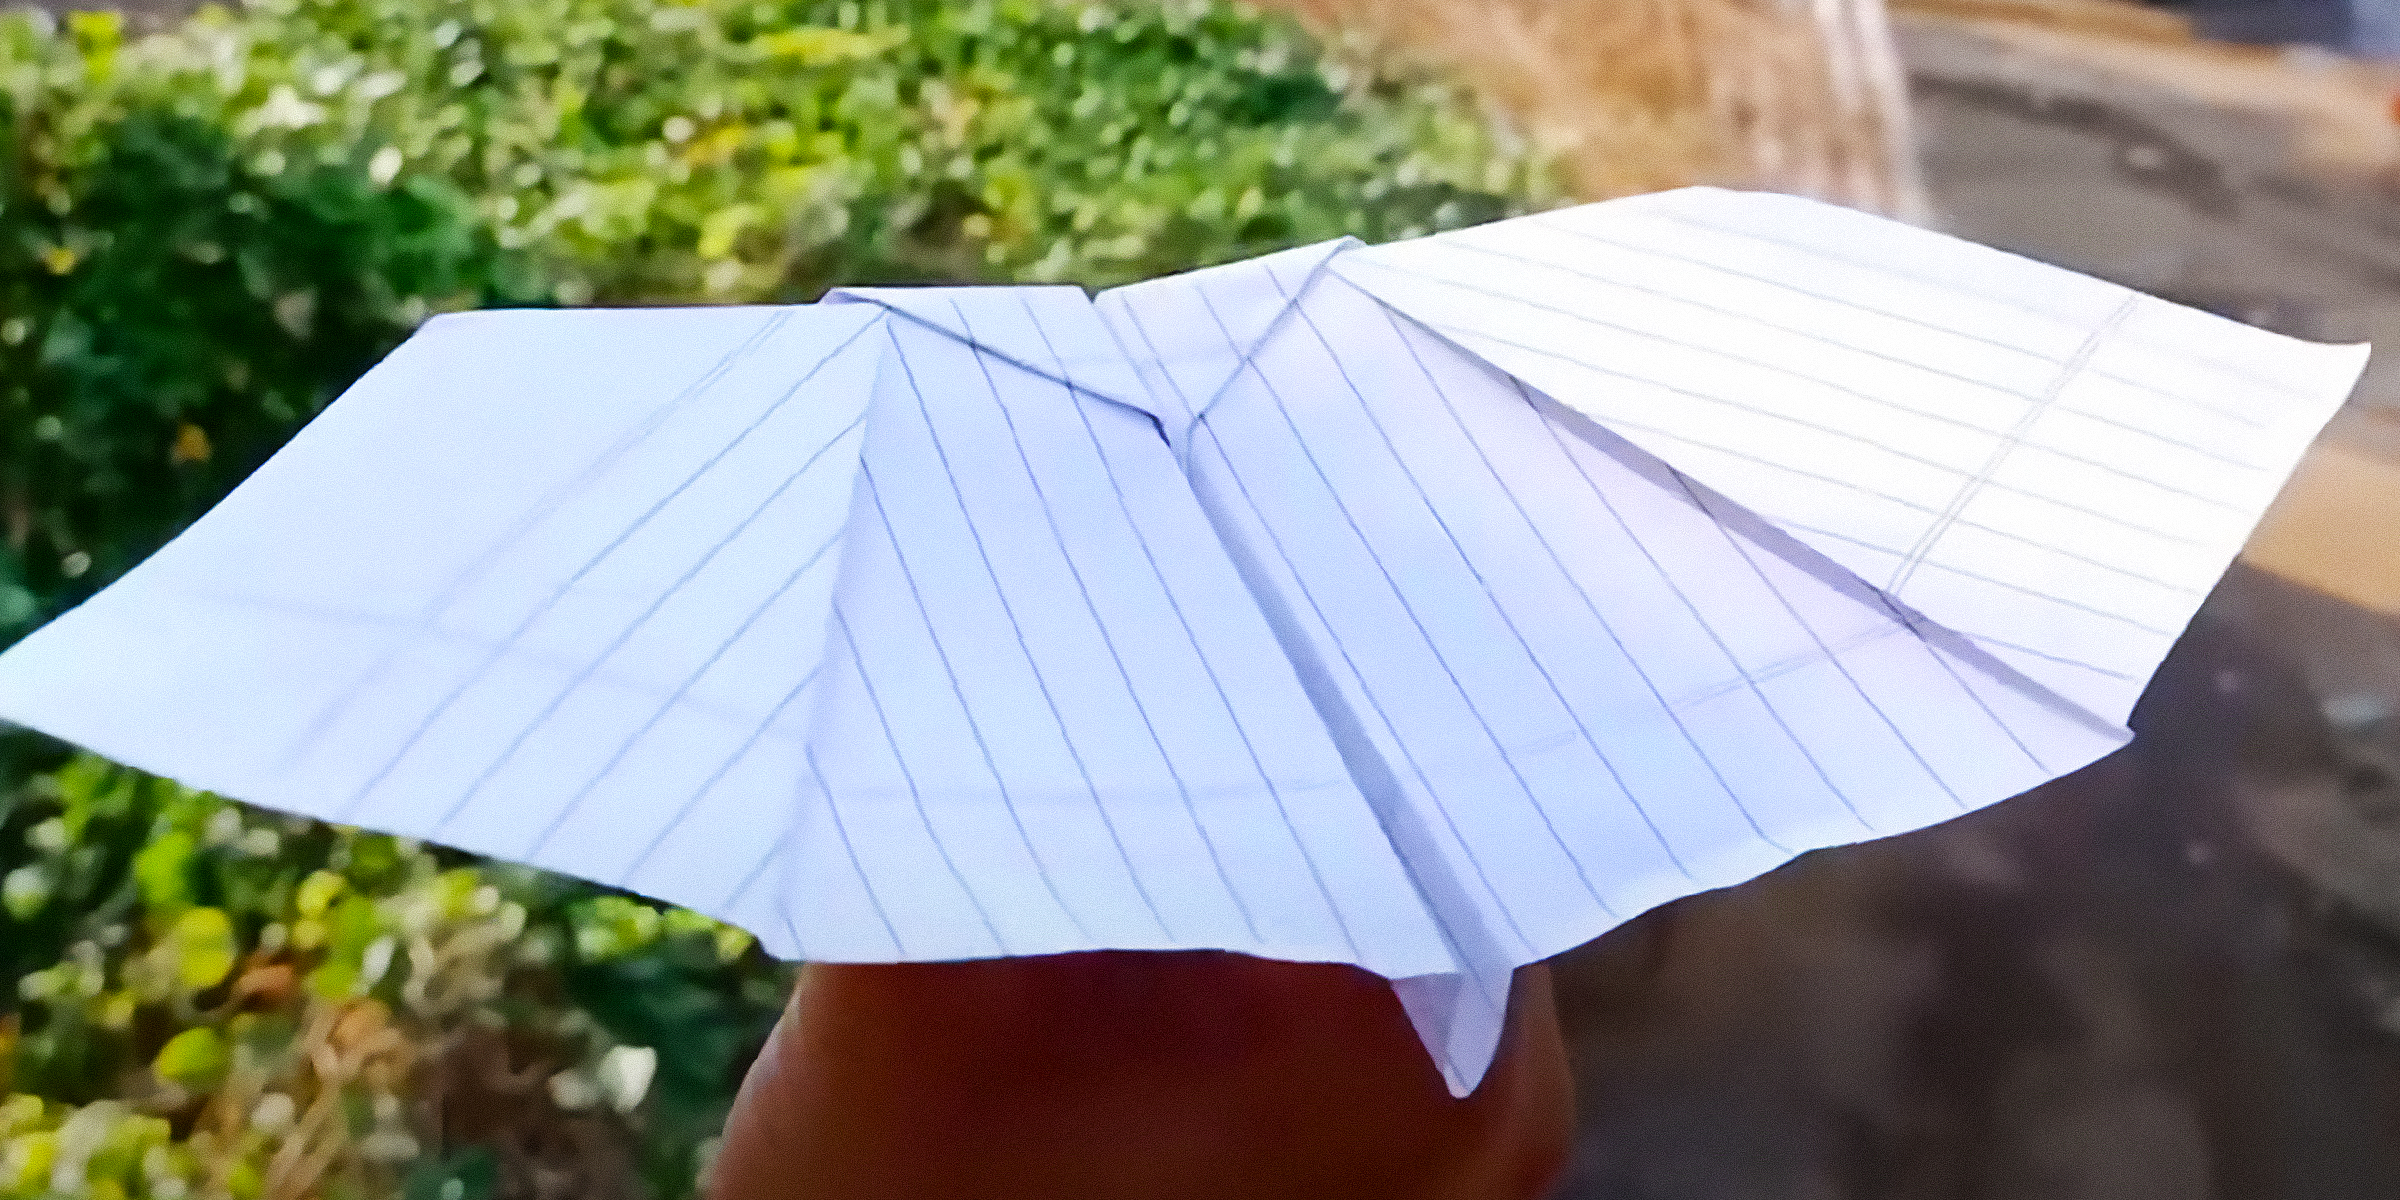 A bat paper plane | Source: YouTube/TechnoKriArt